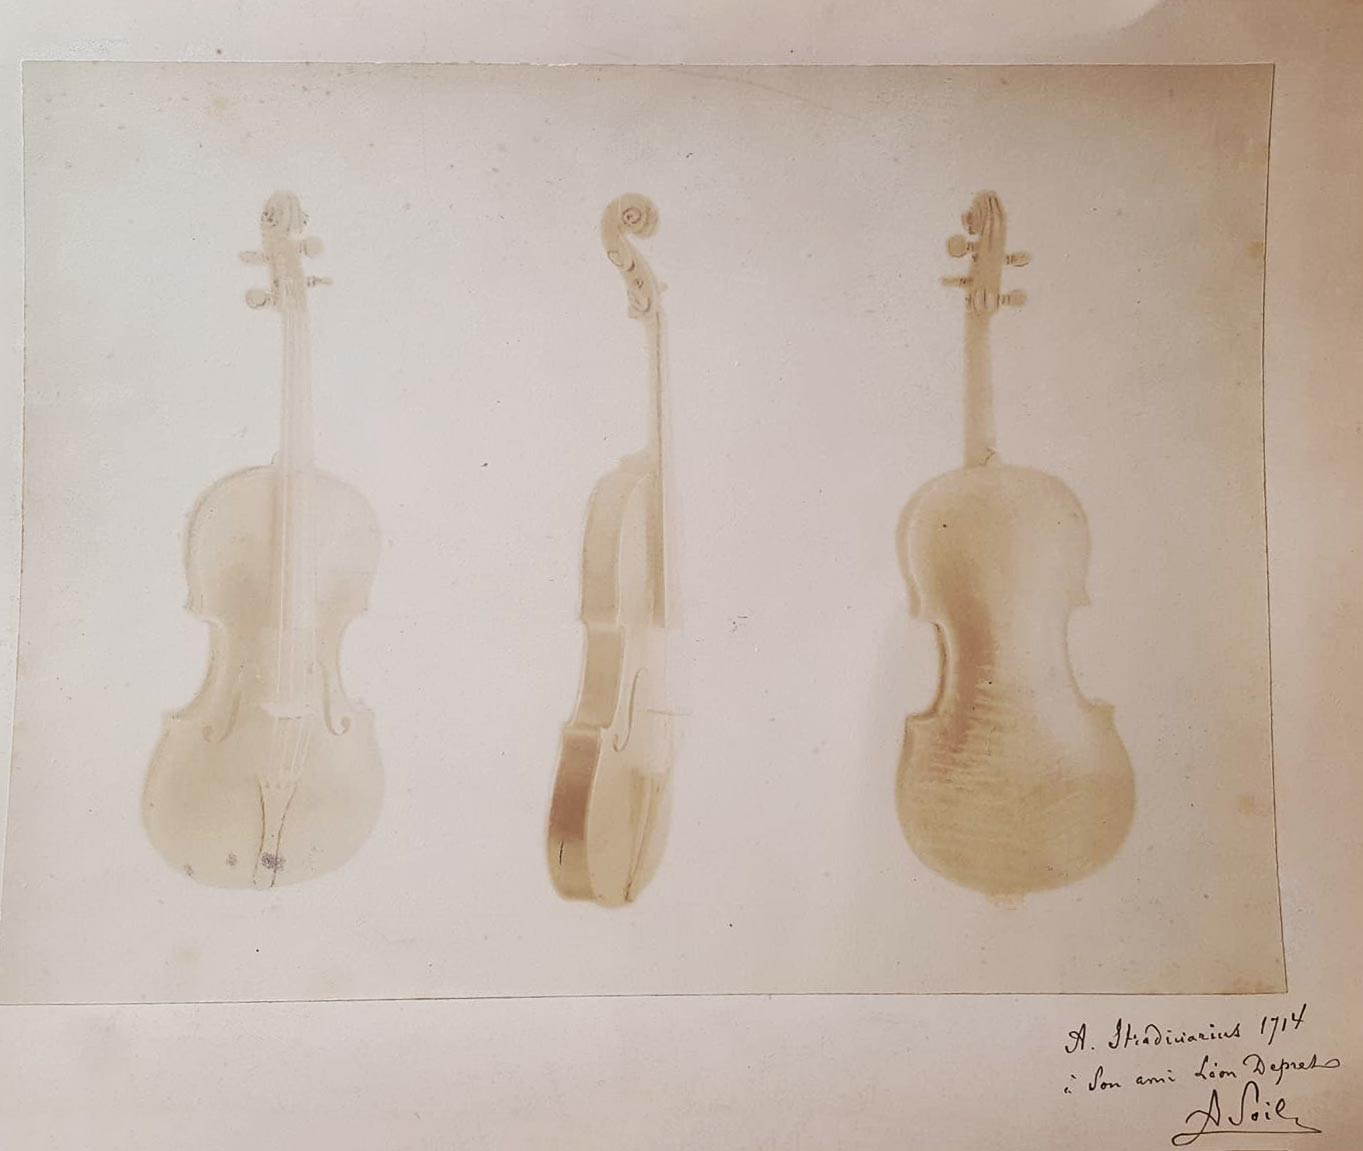 Quand Monsieur Amédée SOIL offrait des photos dédicacées de son Stradivarius 1714. Maison Vatelot-Rampal